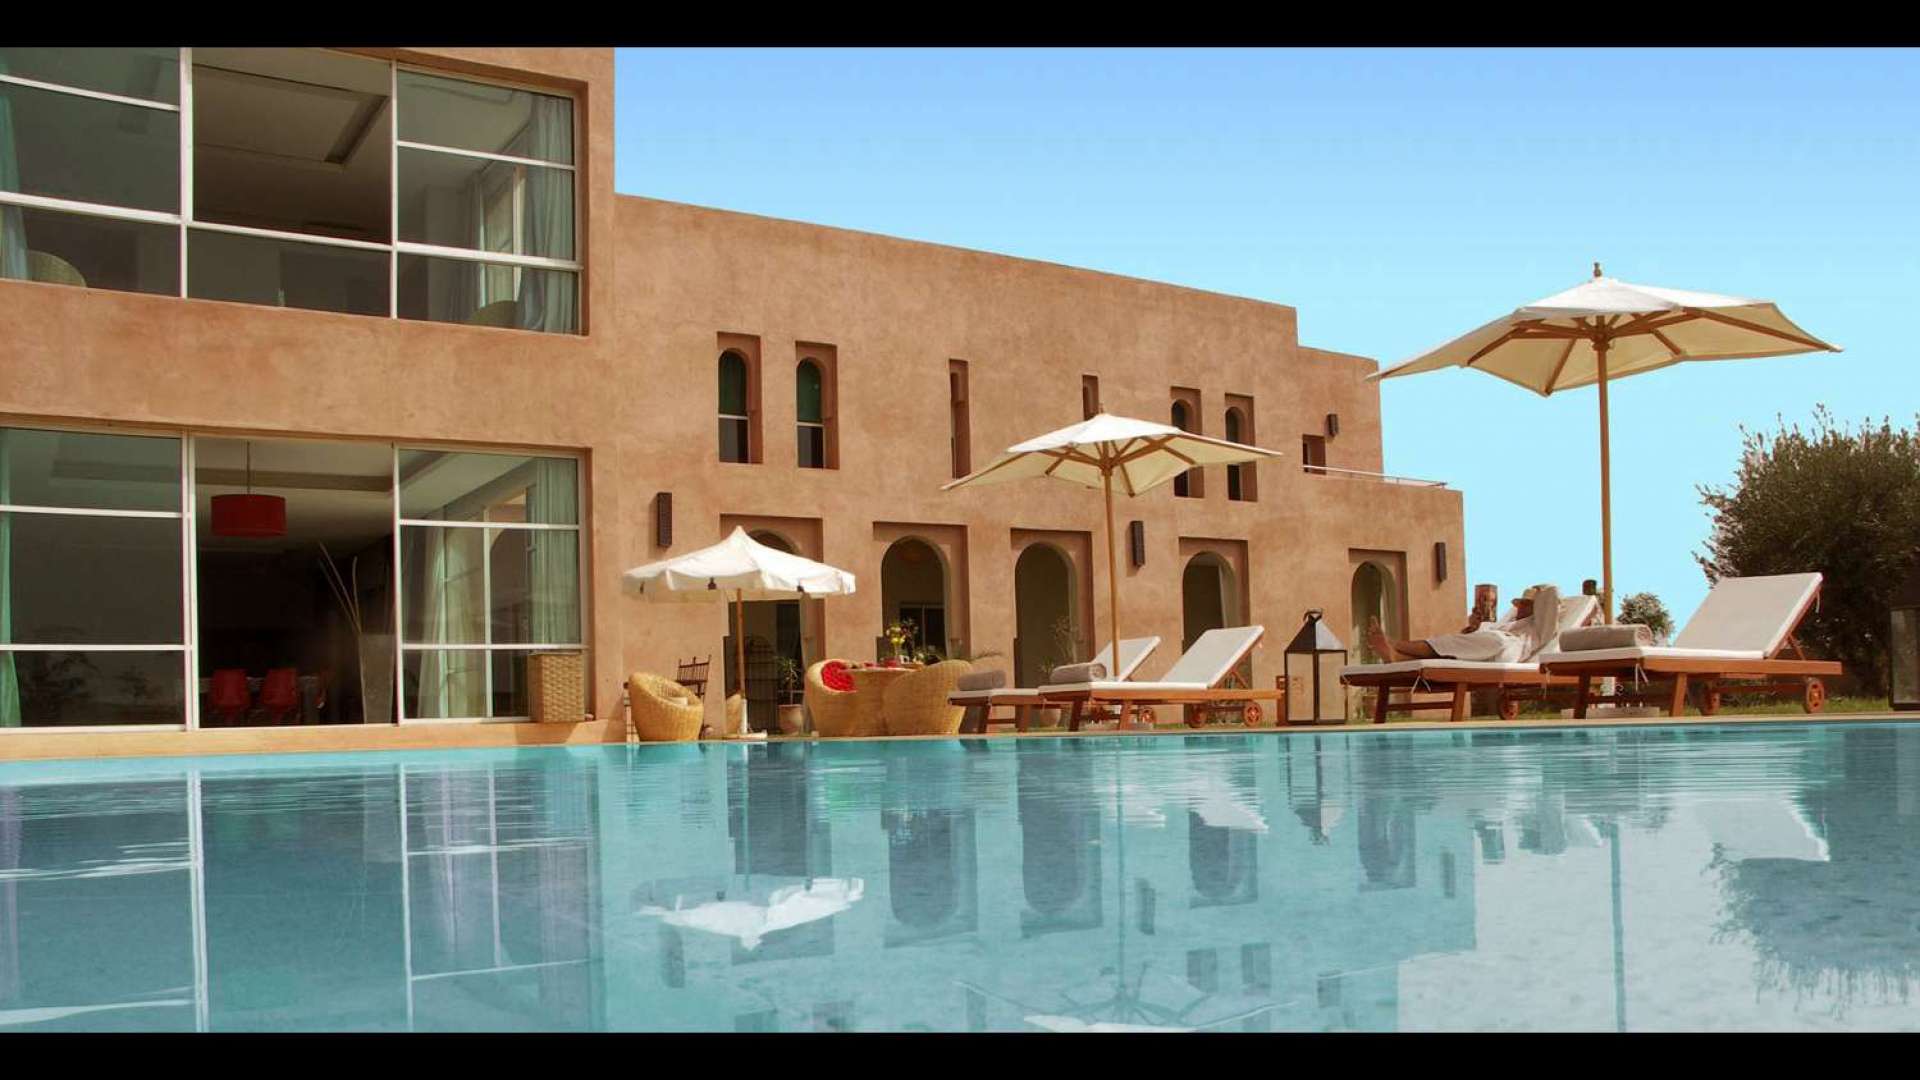 Location de vacances,Villa,Magnifique villa 6ch - 2 piscines - hammam - Bab Atlas,Marrakech,Bab Atlas